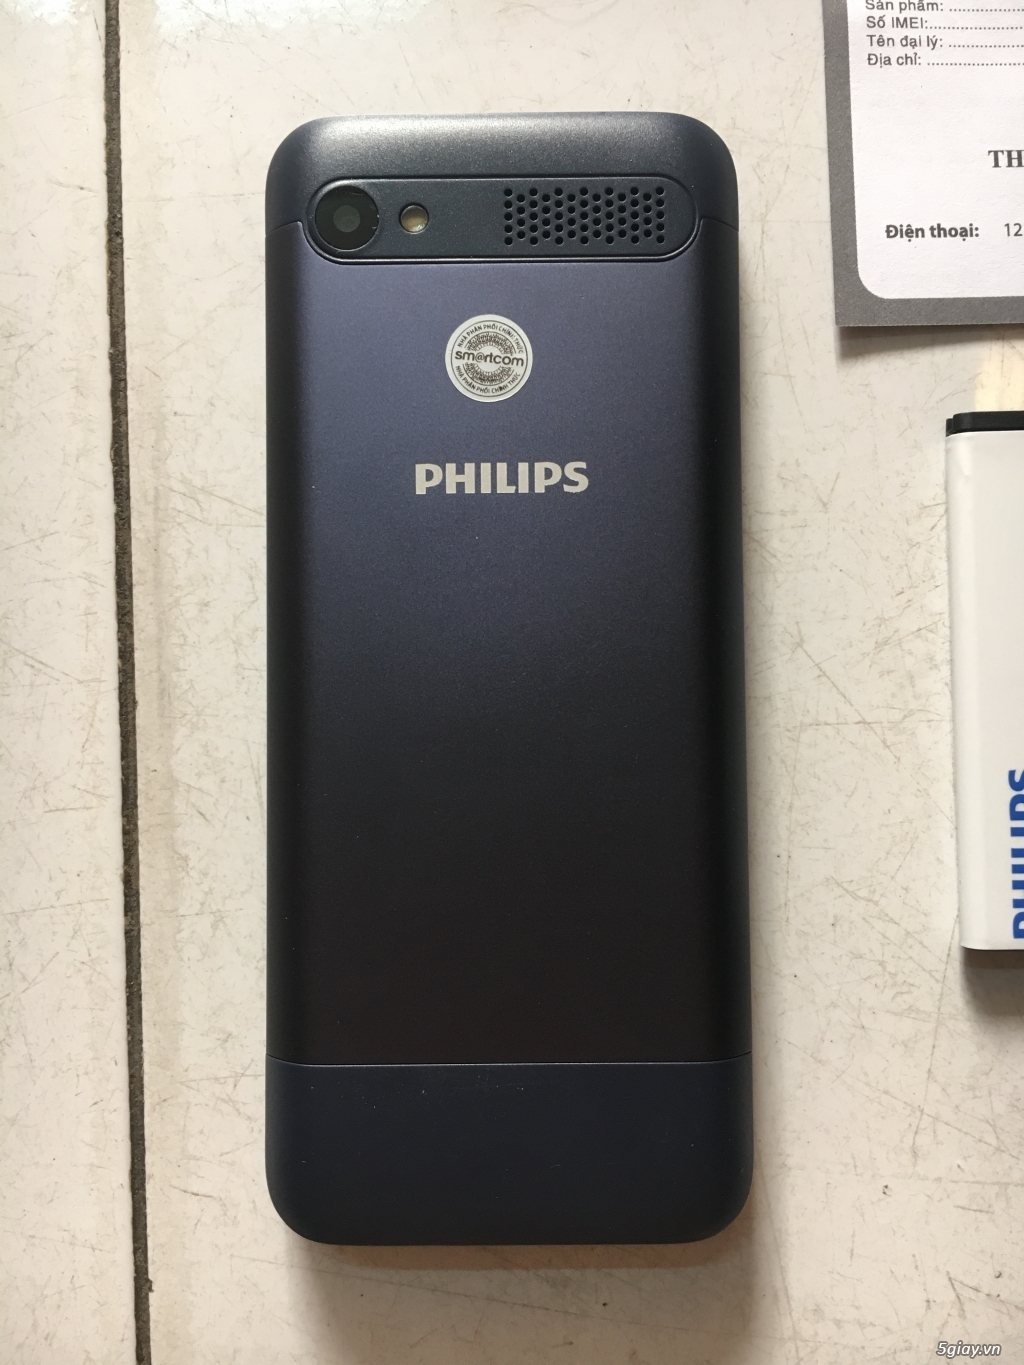 Điện thoại Philips E316 pin 1600mAh chính hãng - 1